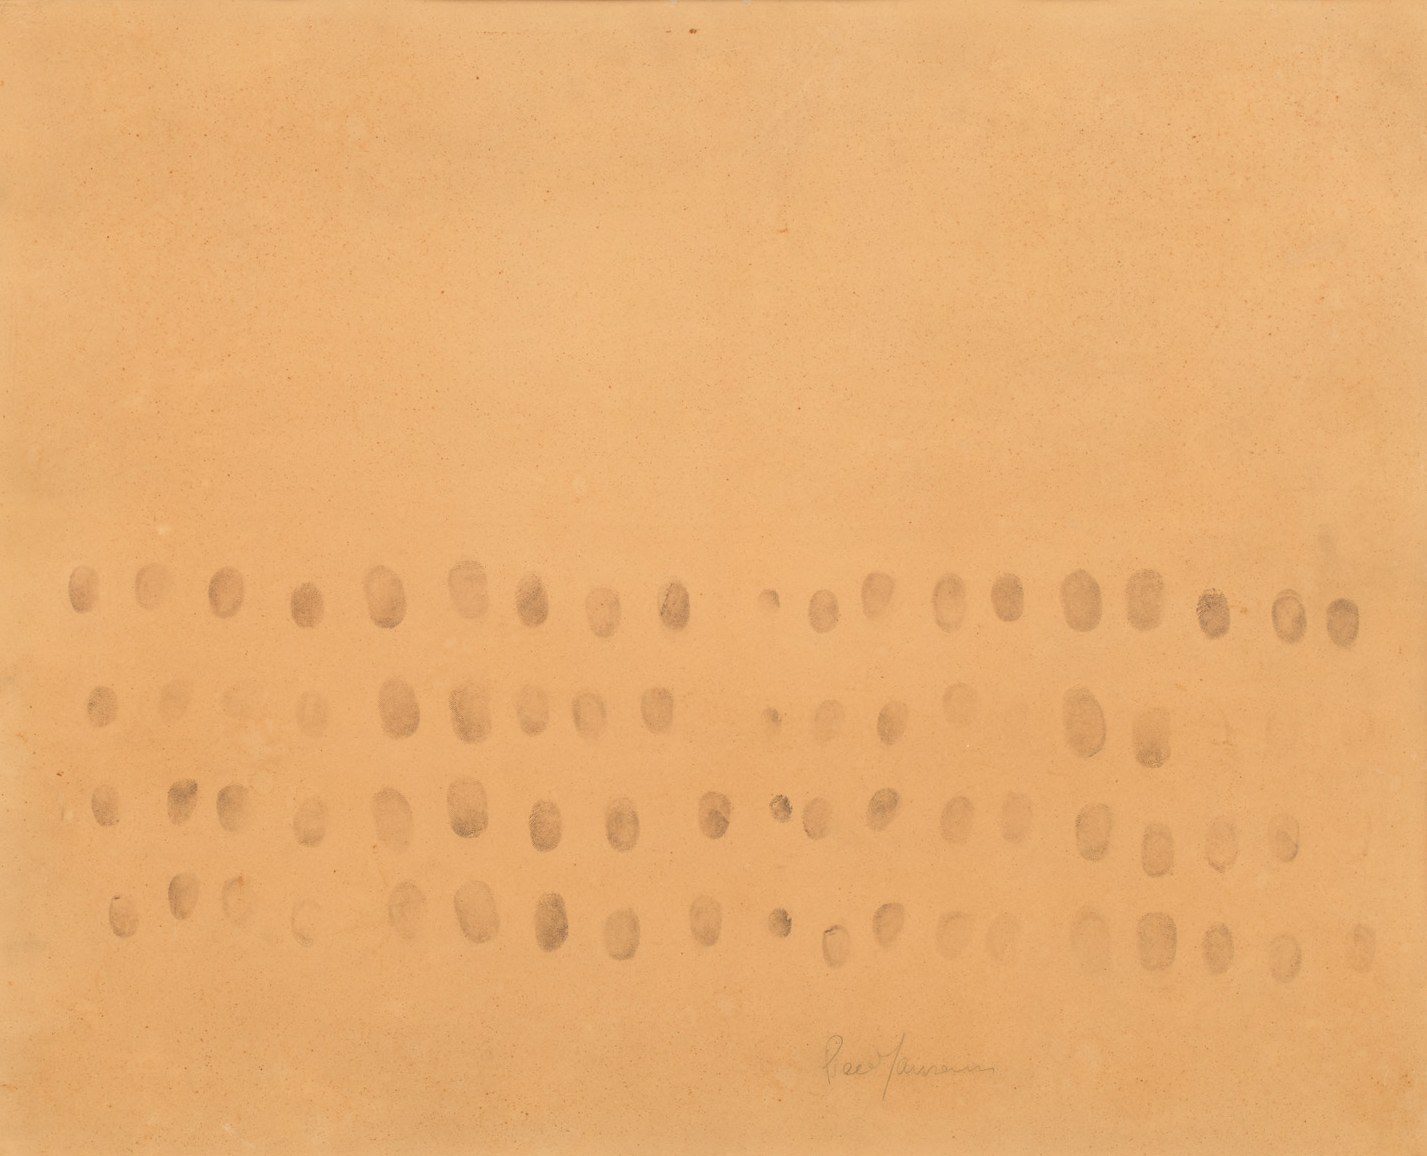 Piero Manzoni

&amp;ldquo;Impronte&amp;rdquo;, ca. 1961

Ink on paper

19 3/4 x 24 inches

50 x 61 cm

MAN 36